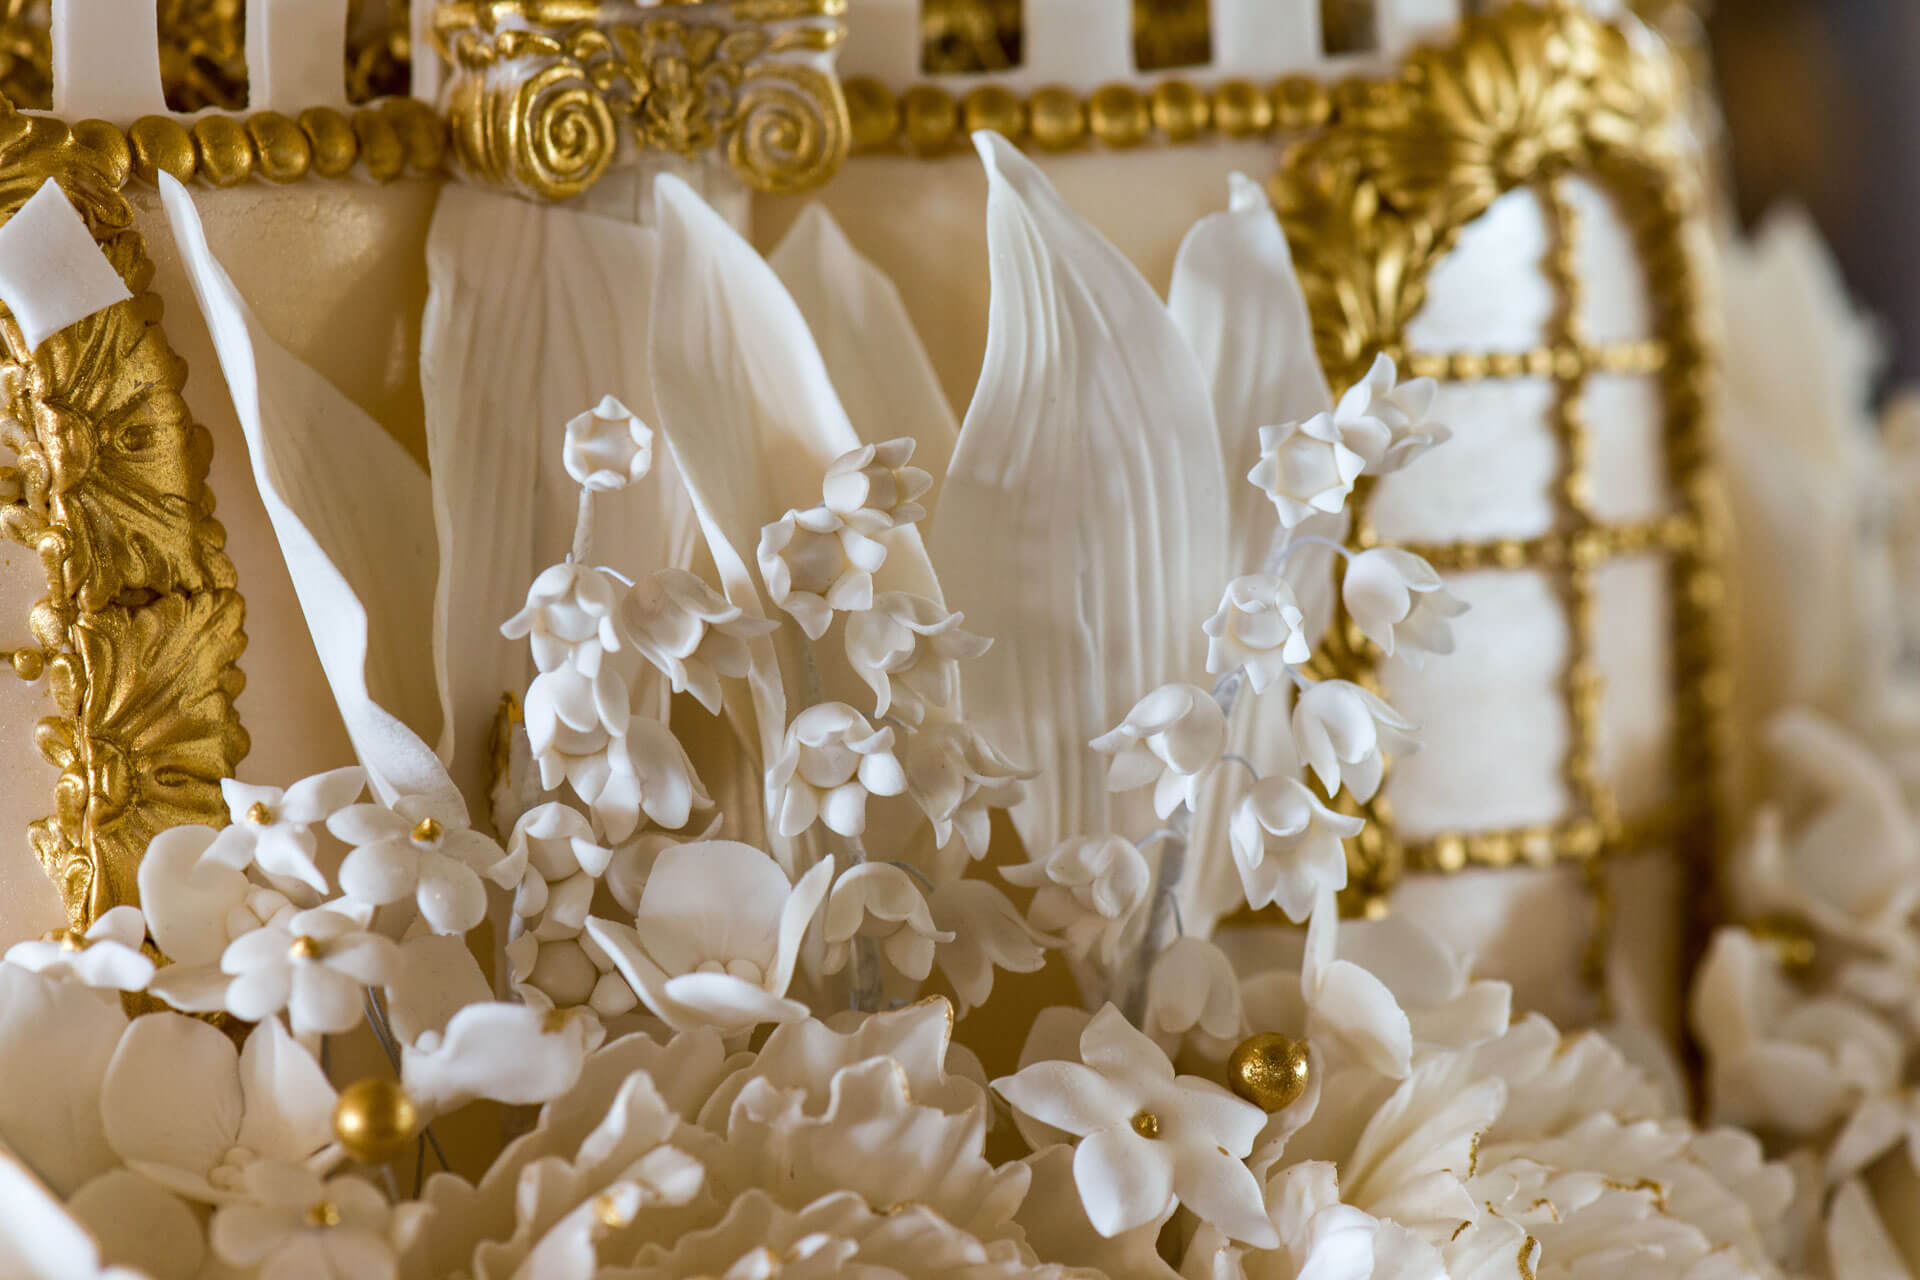 Cliveden Wedding Cake By Yevnig Cliveden House Xavier Walker sugar flower detail